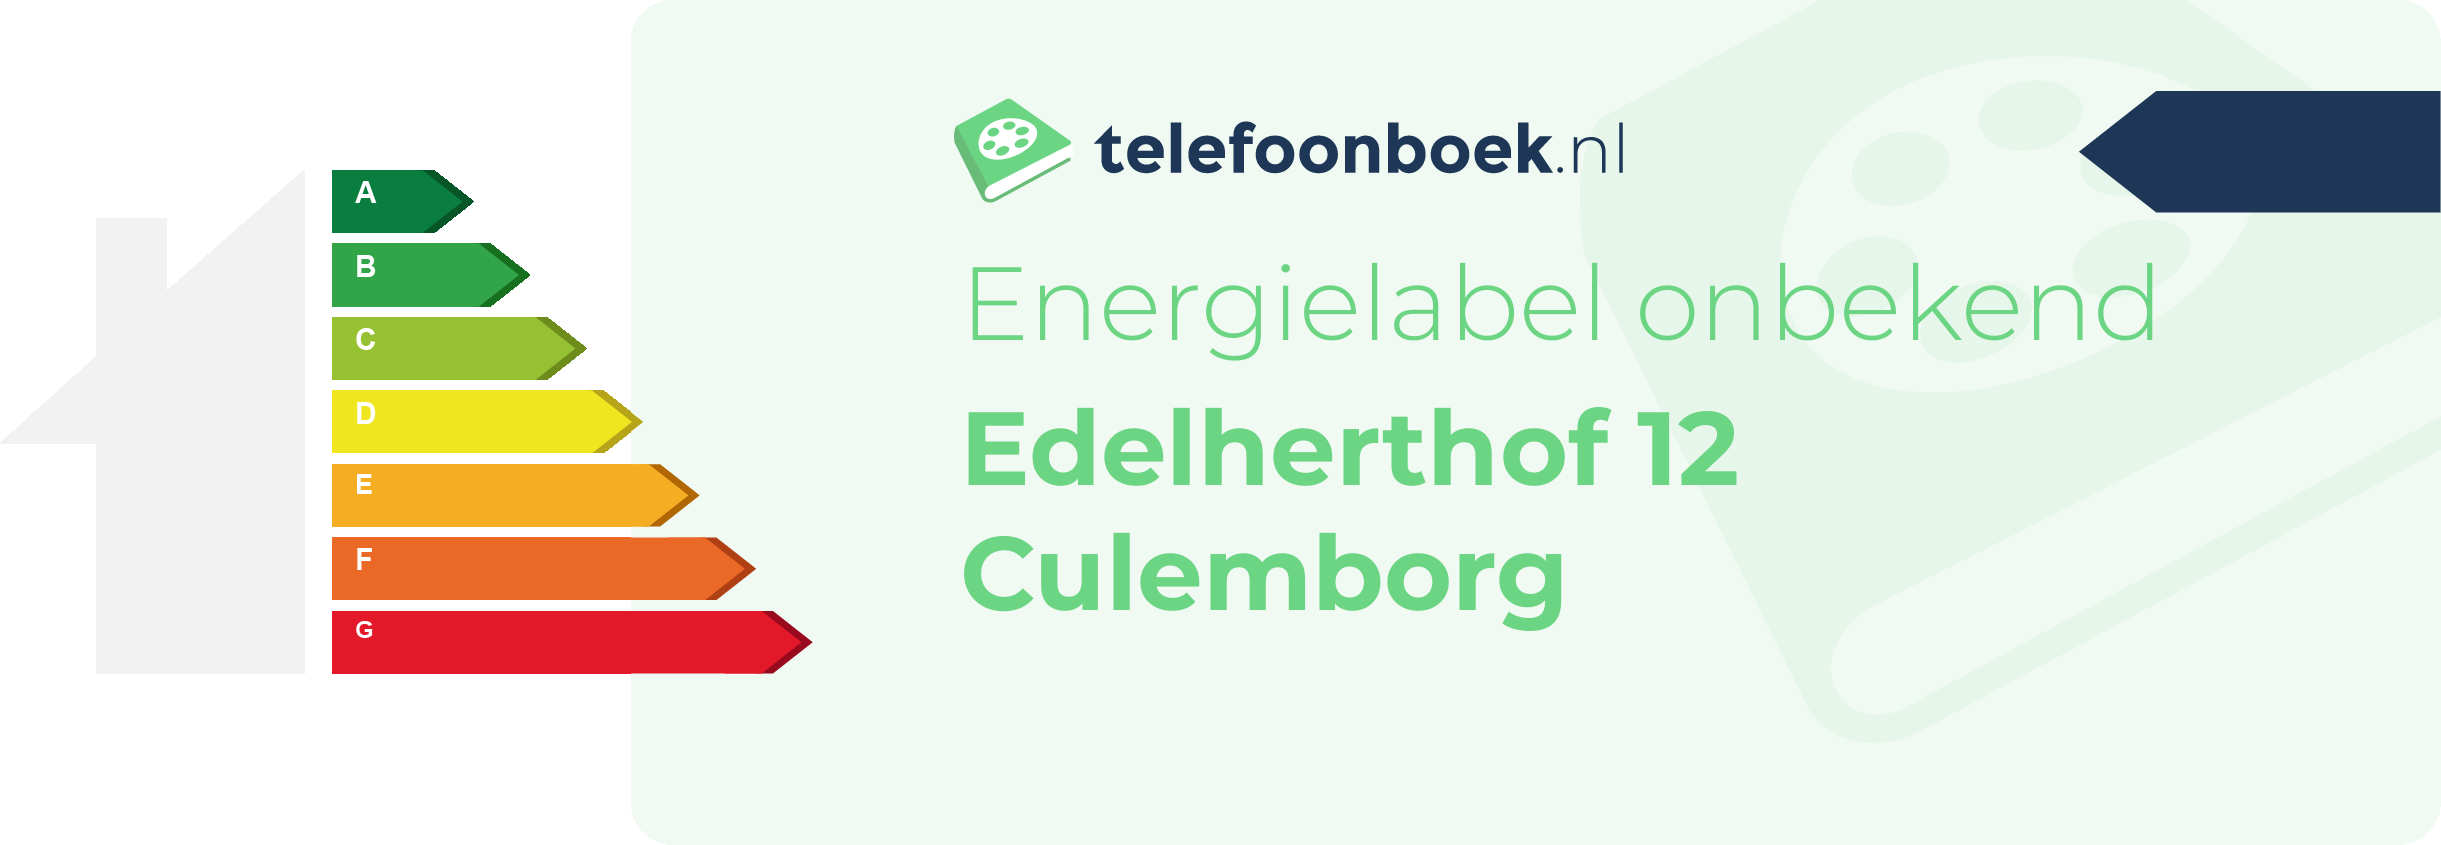 Energielabel Edelherthof 12 Culemborg